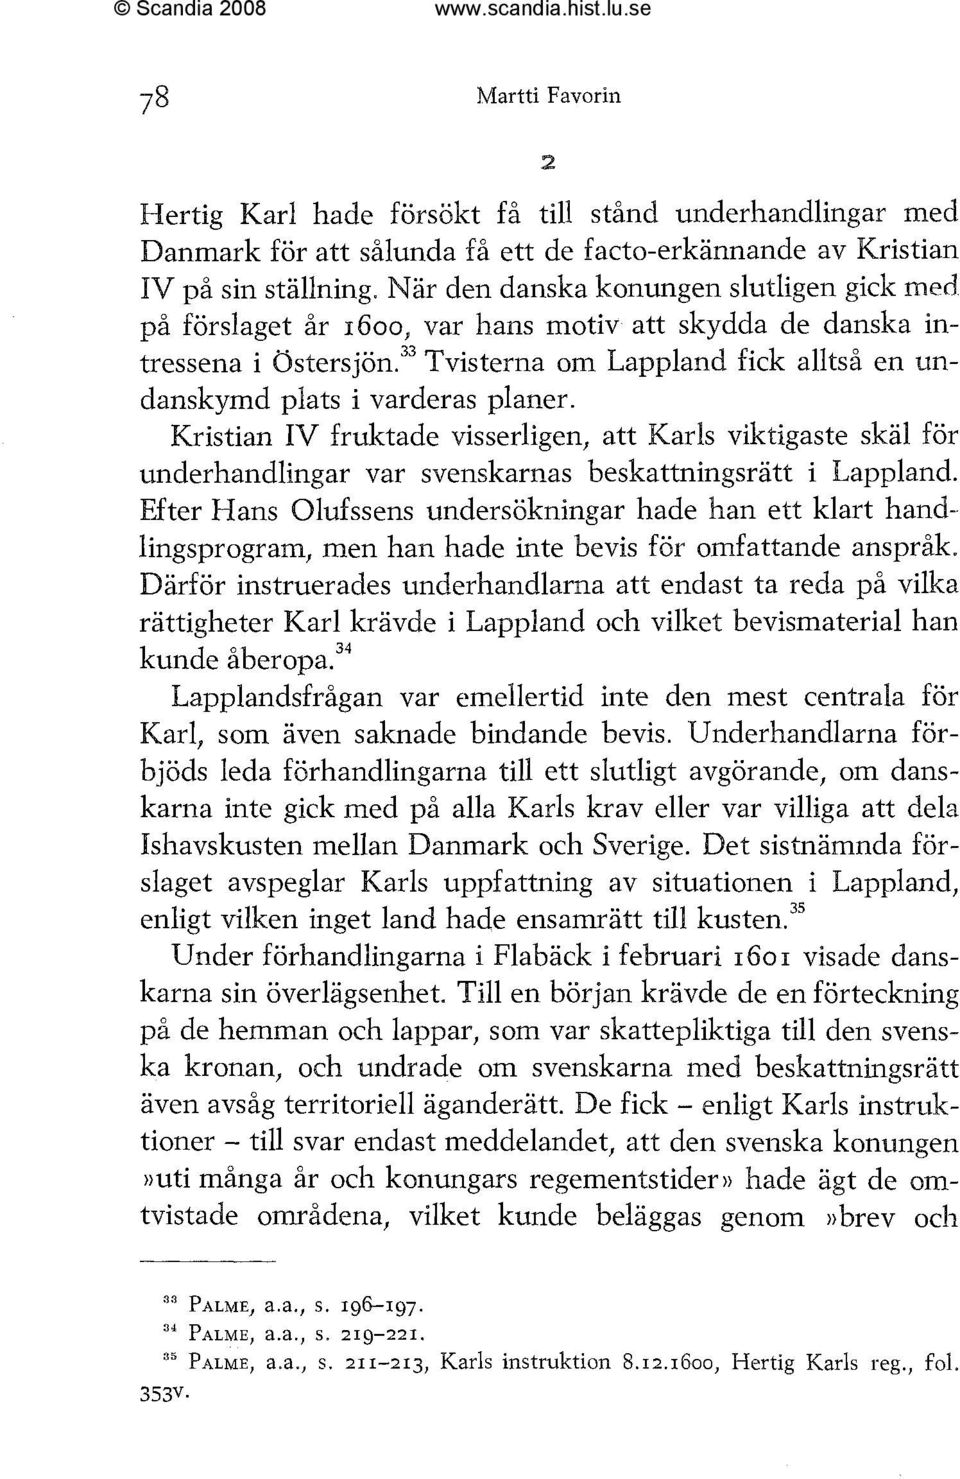 ^^ Tvisterna om Lappland fick alltså en undanskymd plats i varderas planer. Kristian IV fruktade visserligen, att Karls viktigaste skäl för underhandlingar var svenskarnas beskattningsrätt i Lappland.